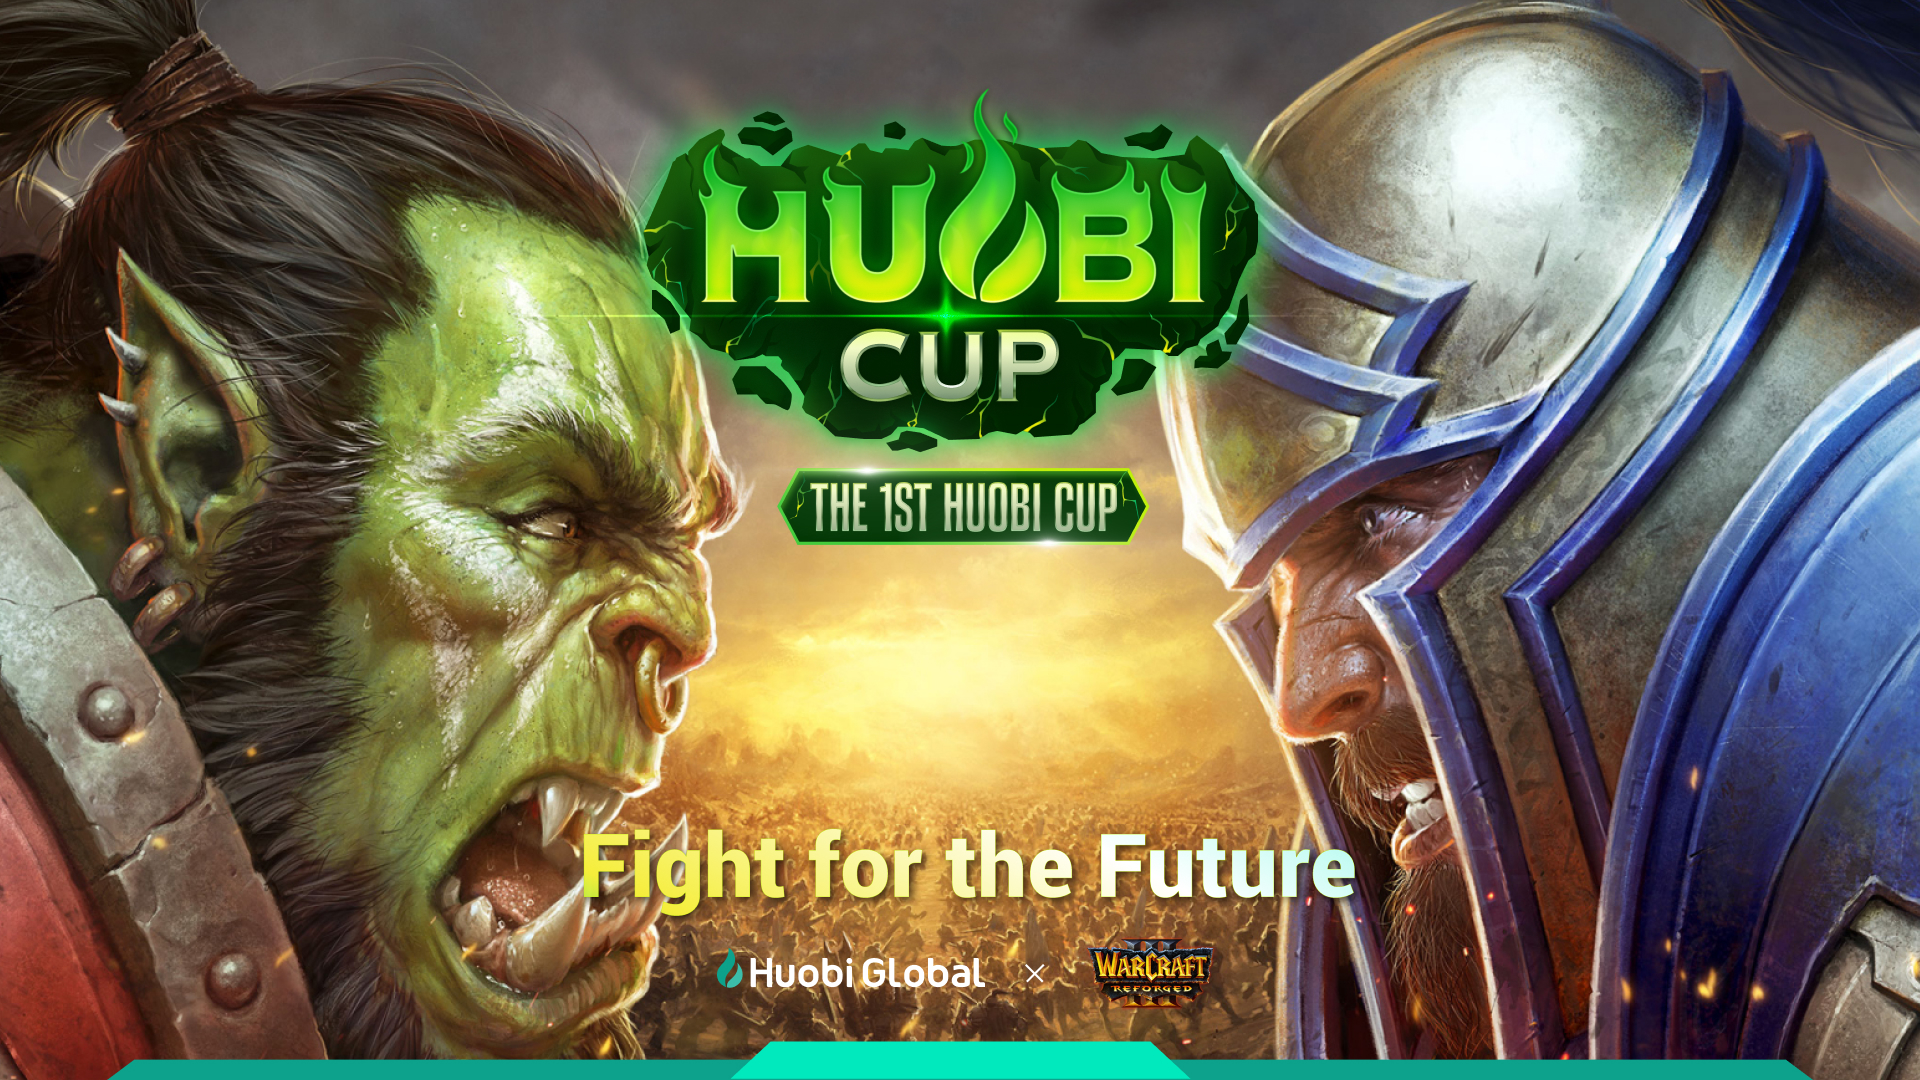 фото: Huobi Global объявляет призовой фонд для фанатов в размере $400 тысяч в рамках проведения кубка по Warcraft III.